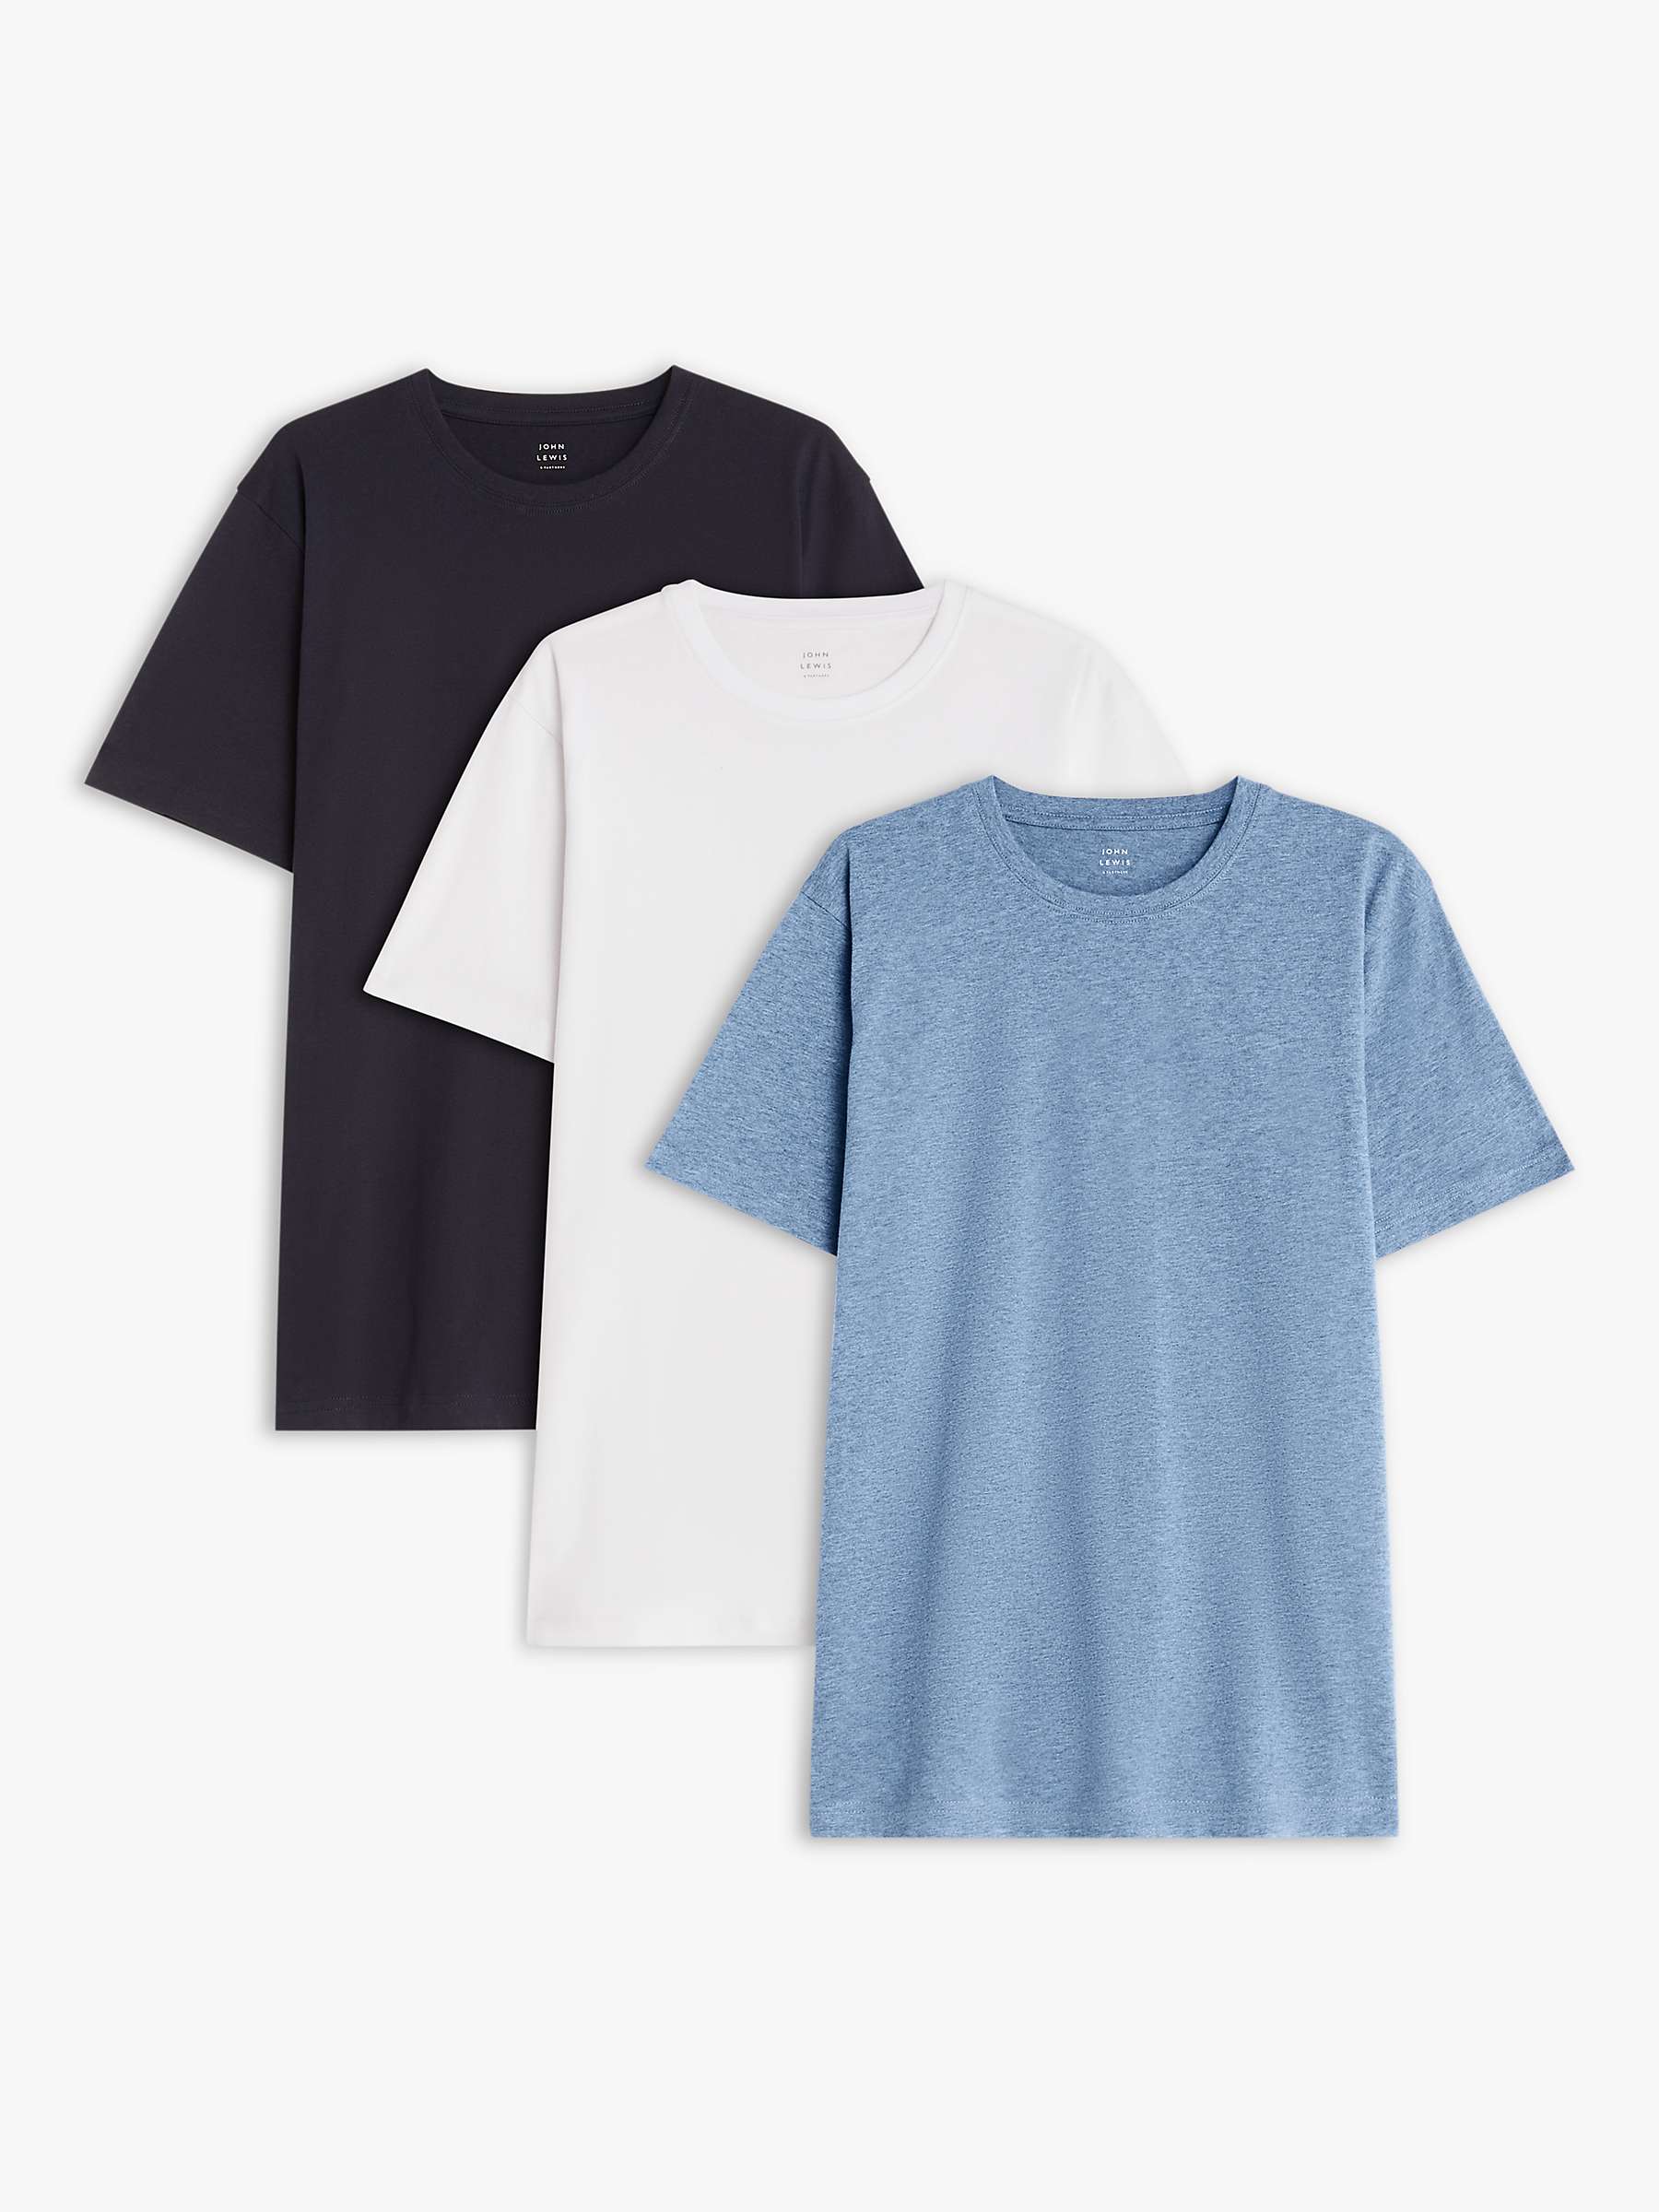 John Lewis Cotton T-Shirt, Pack of 3, White/Blue Melange/Navy at